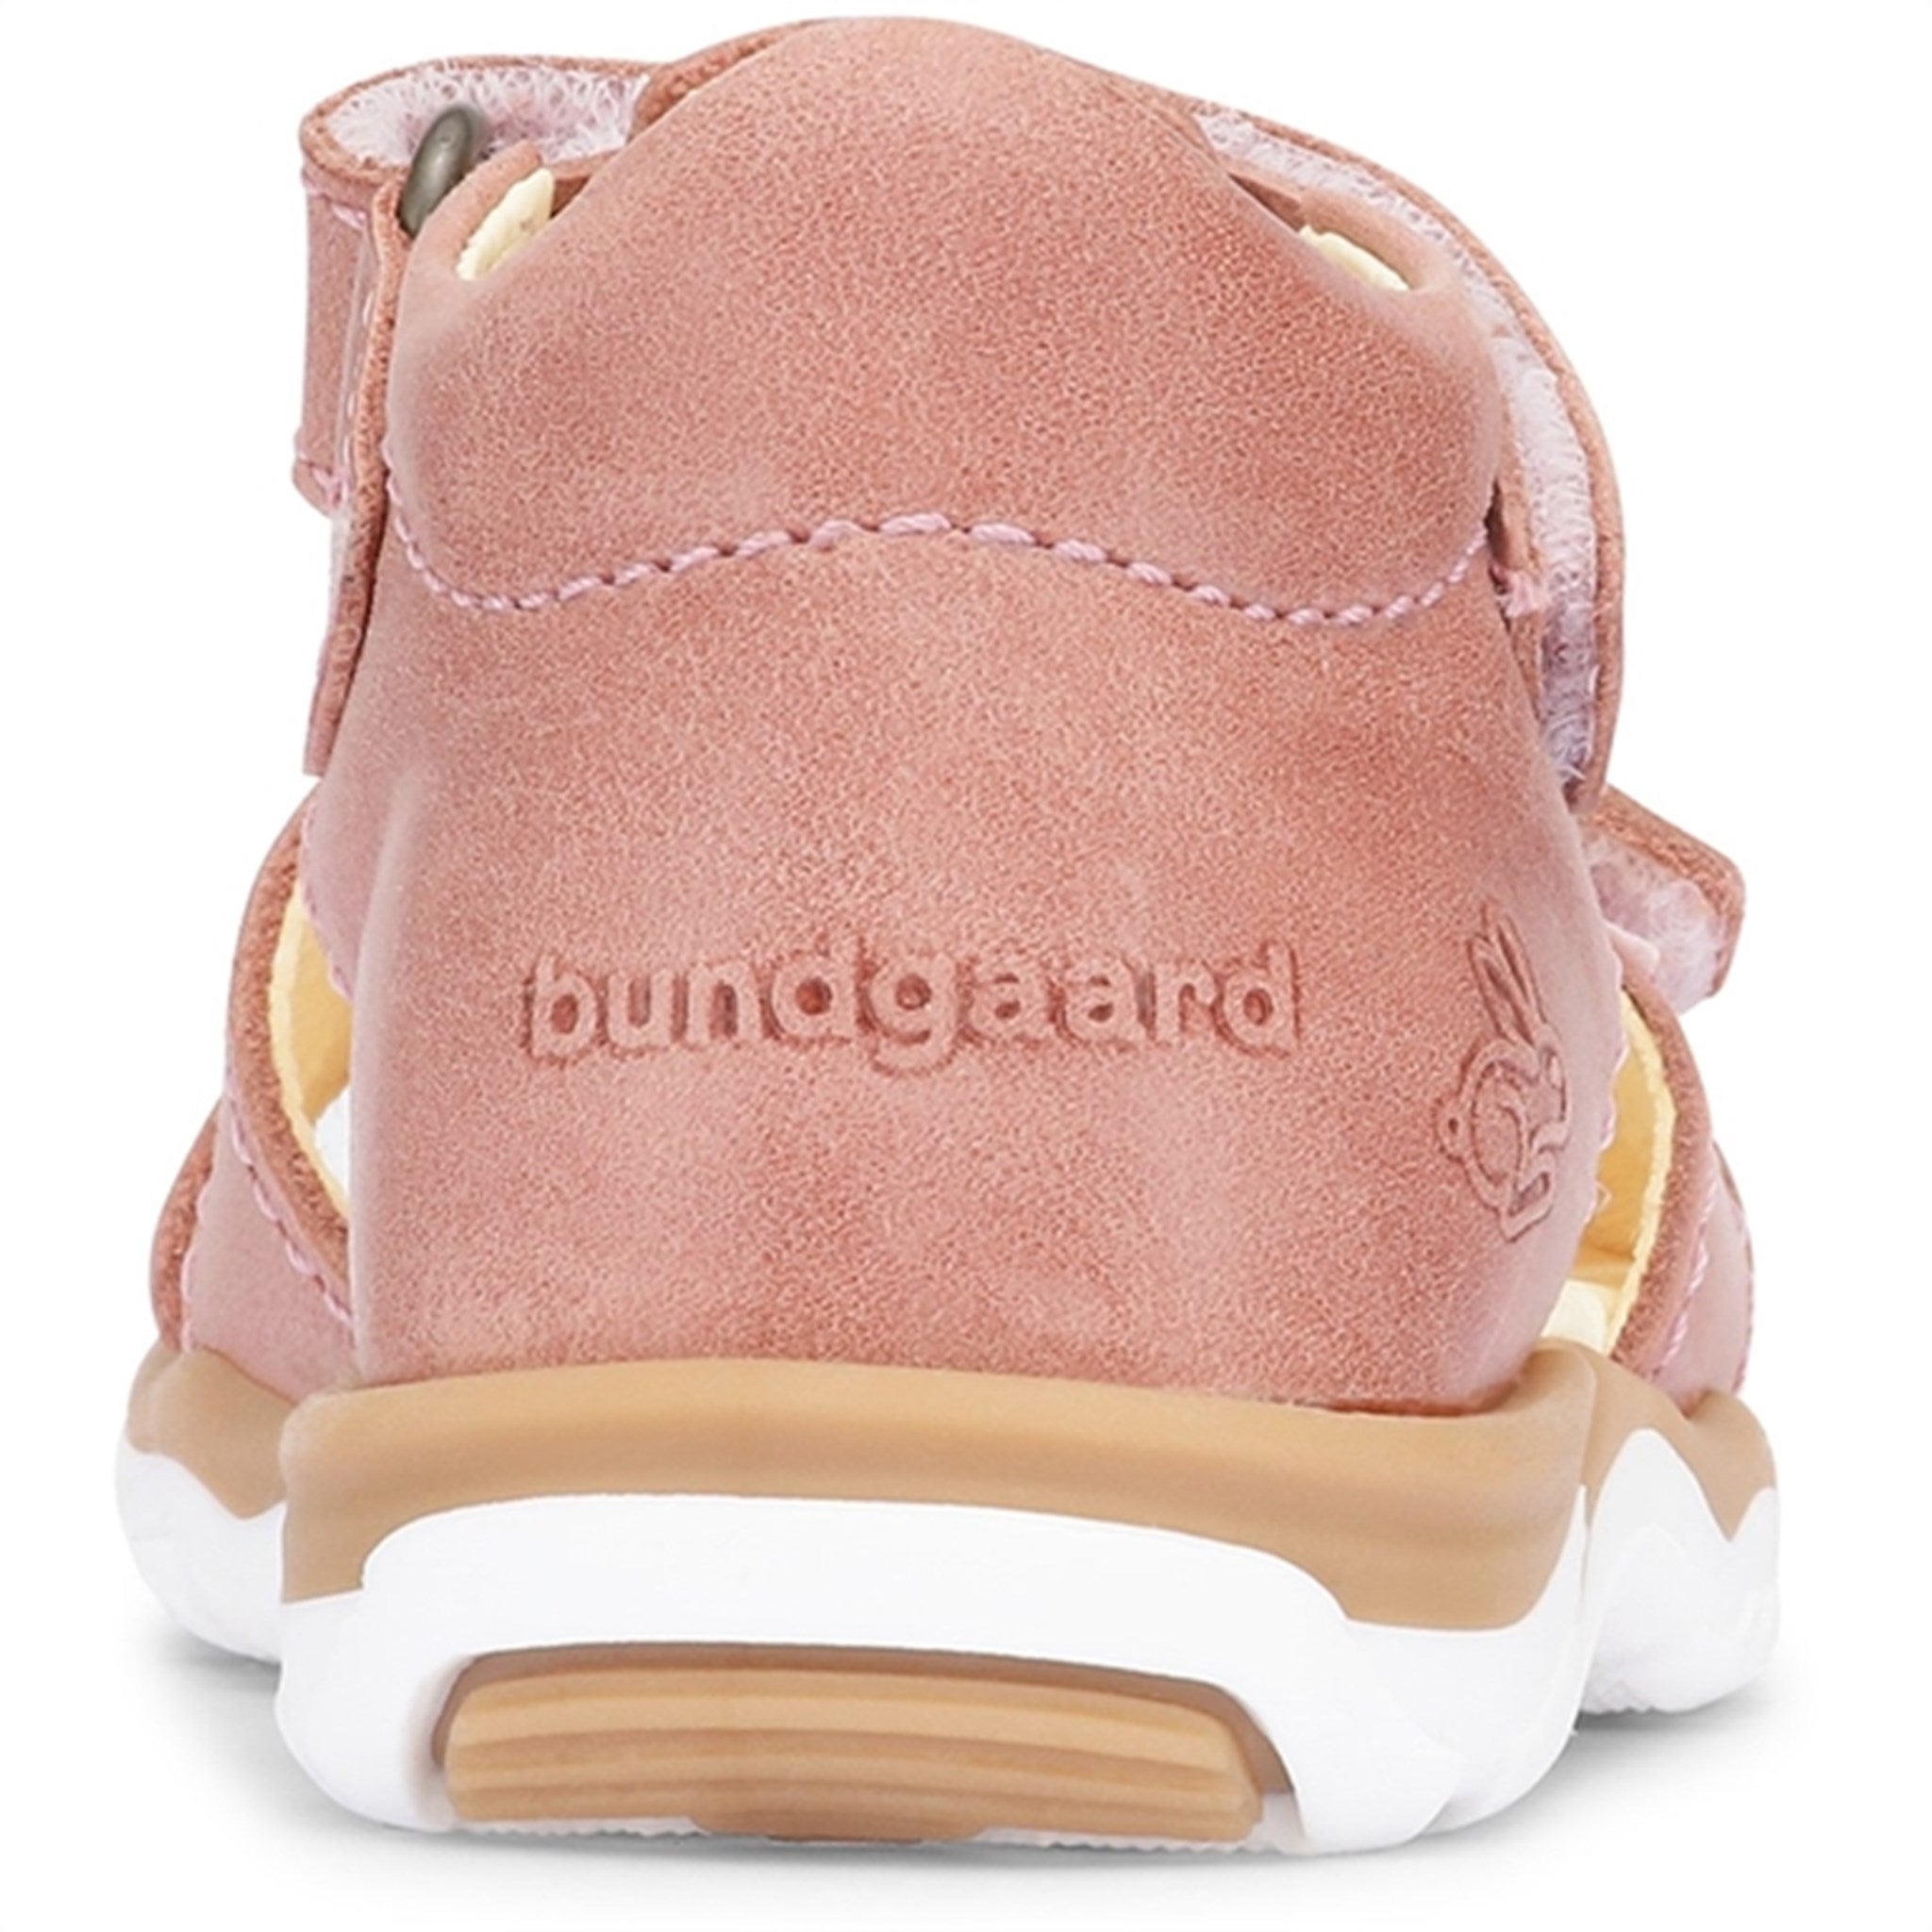 Bundgaard Sofus Sandal Old Rose WS 3